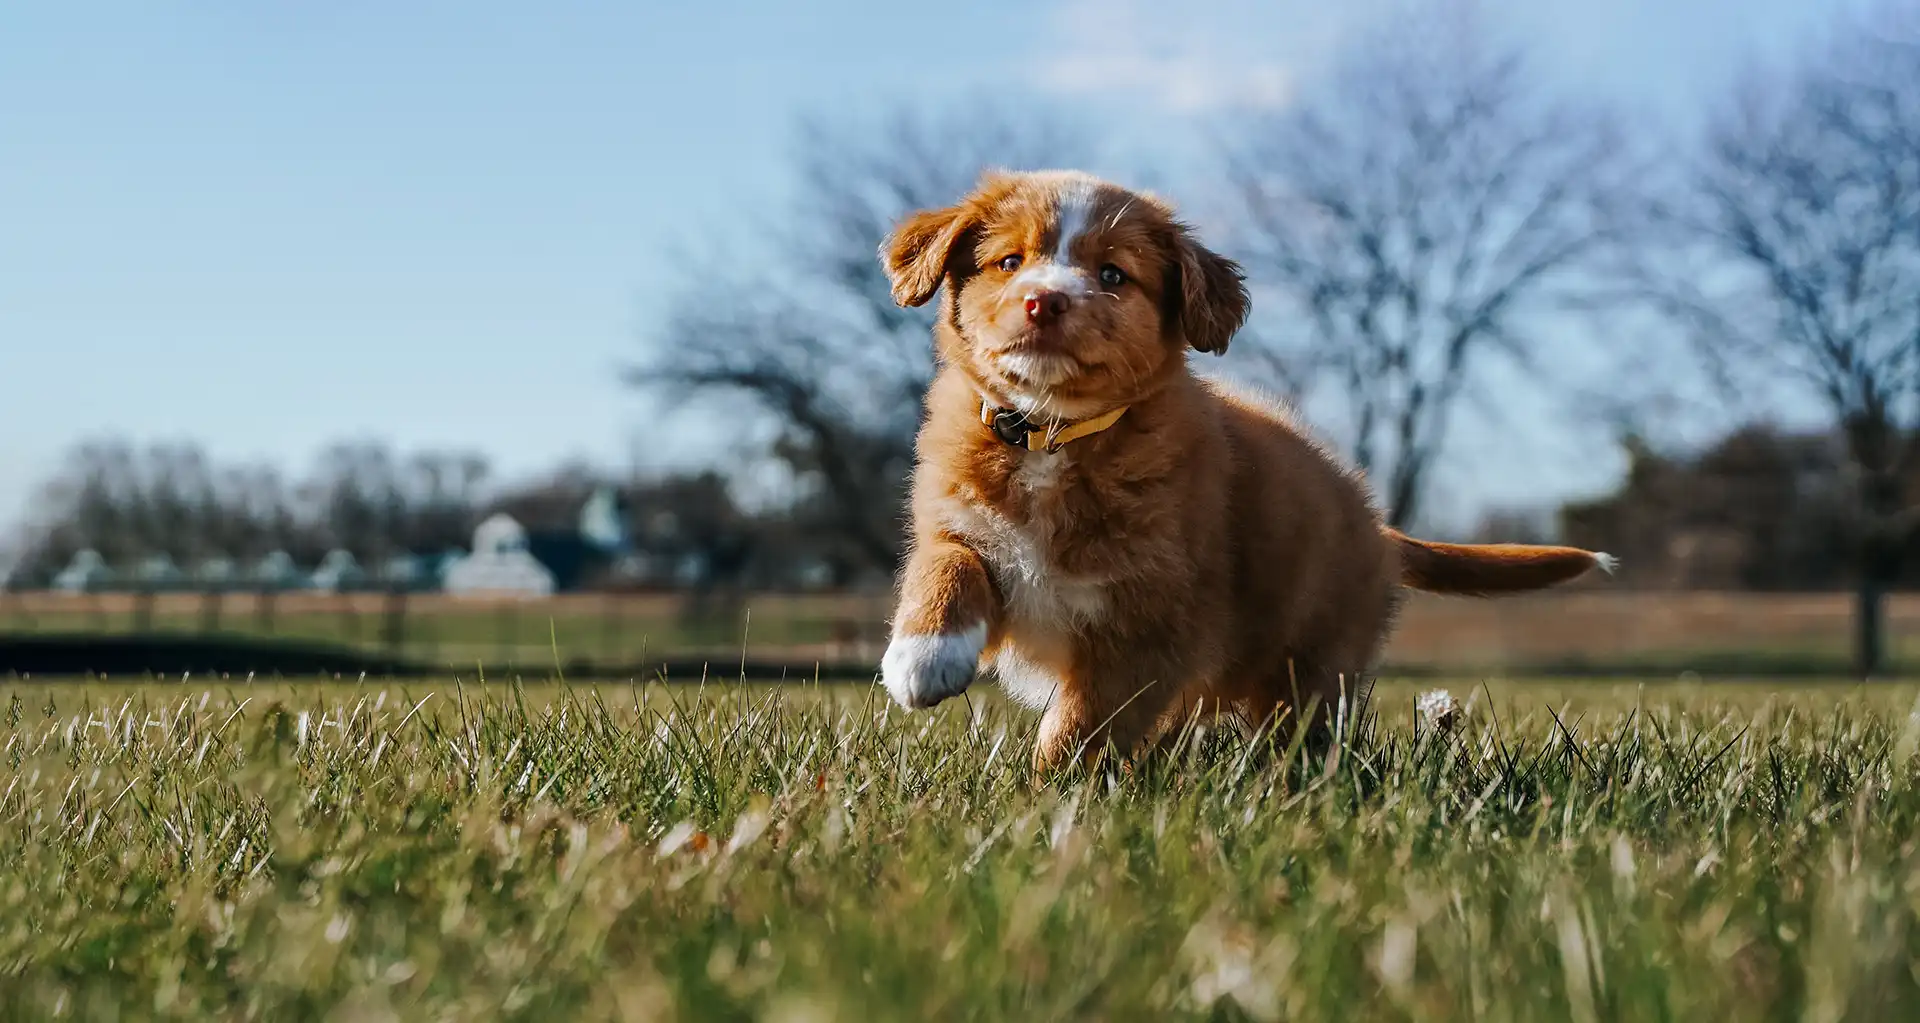 Brown puppy running in grass